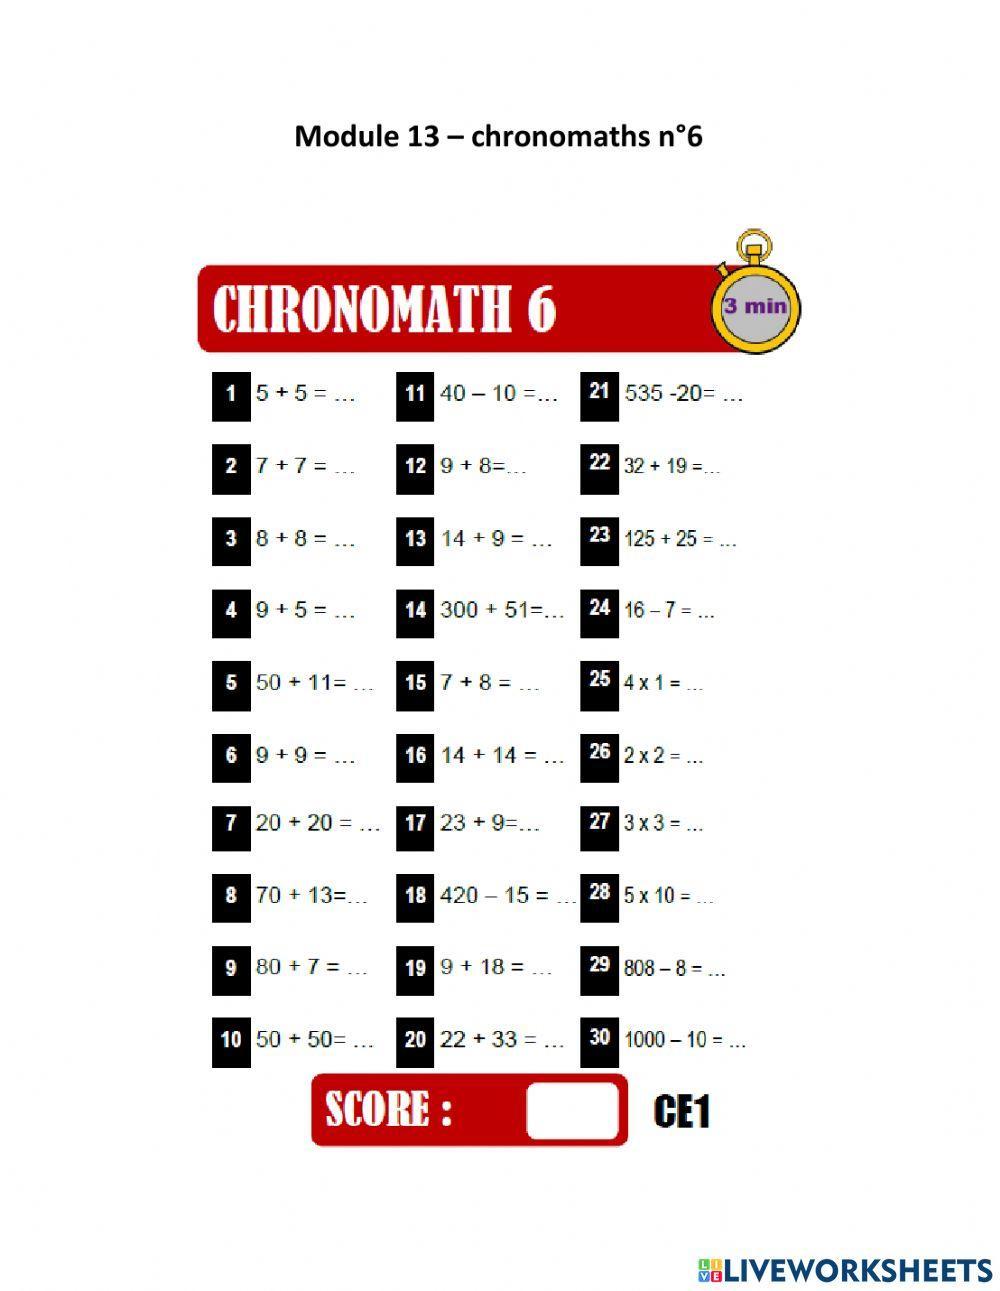 Chronomaths n°6 module 13